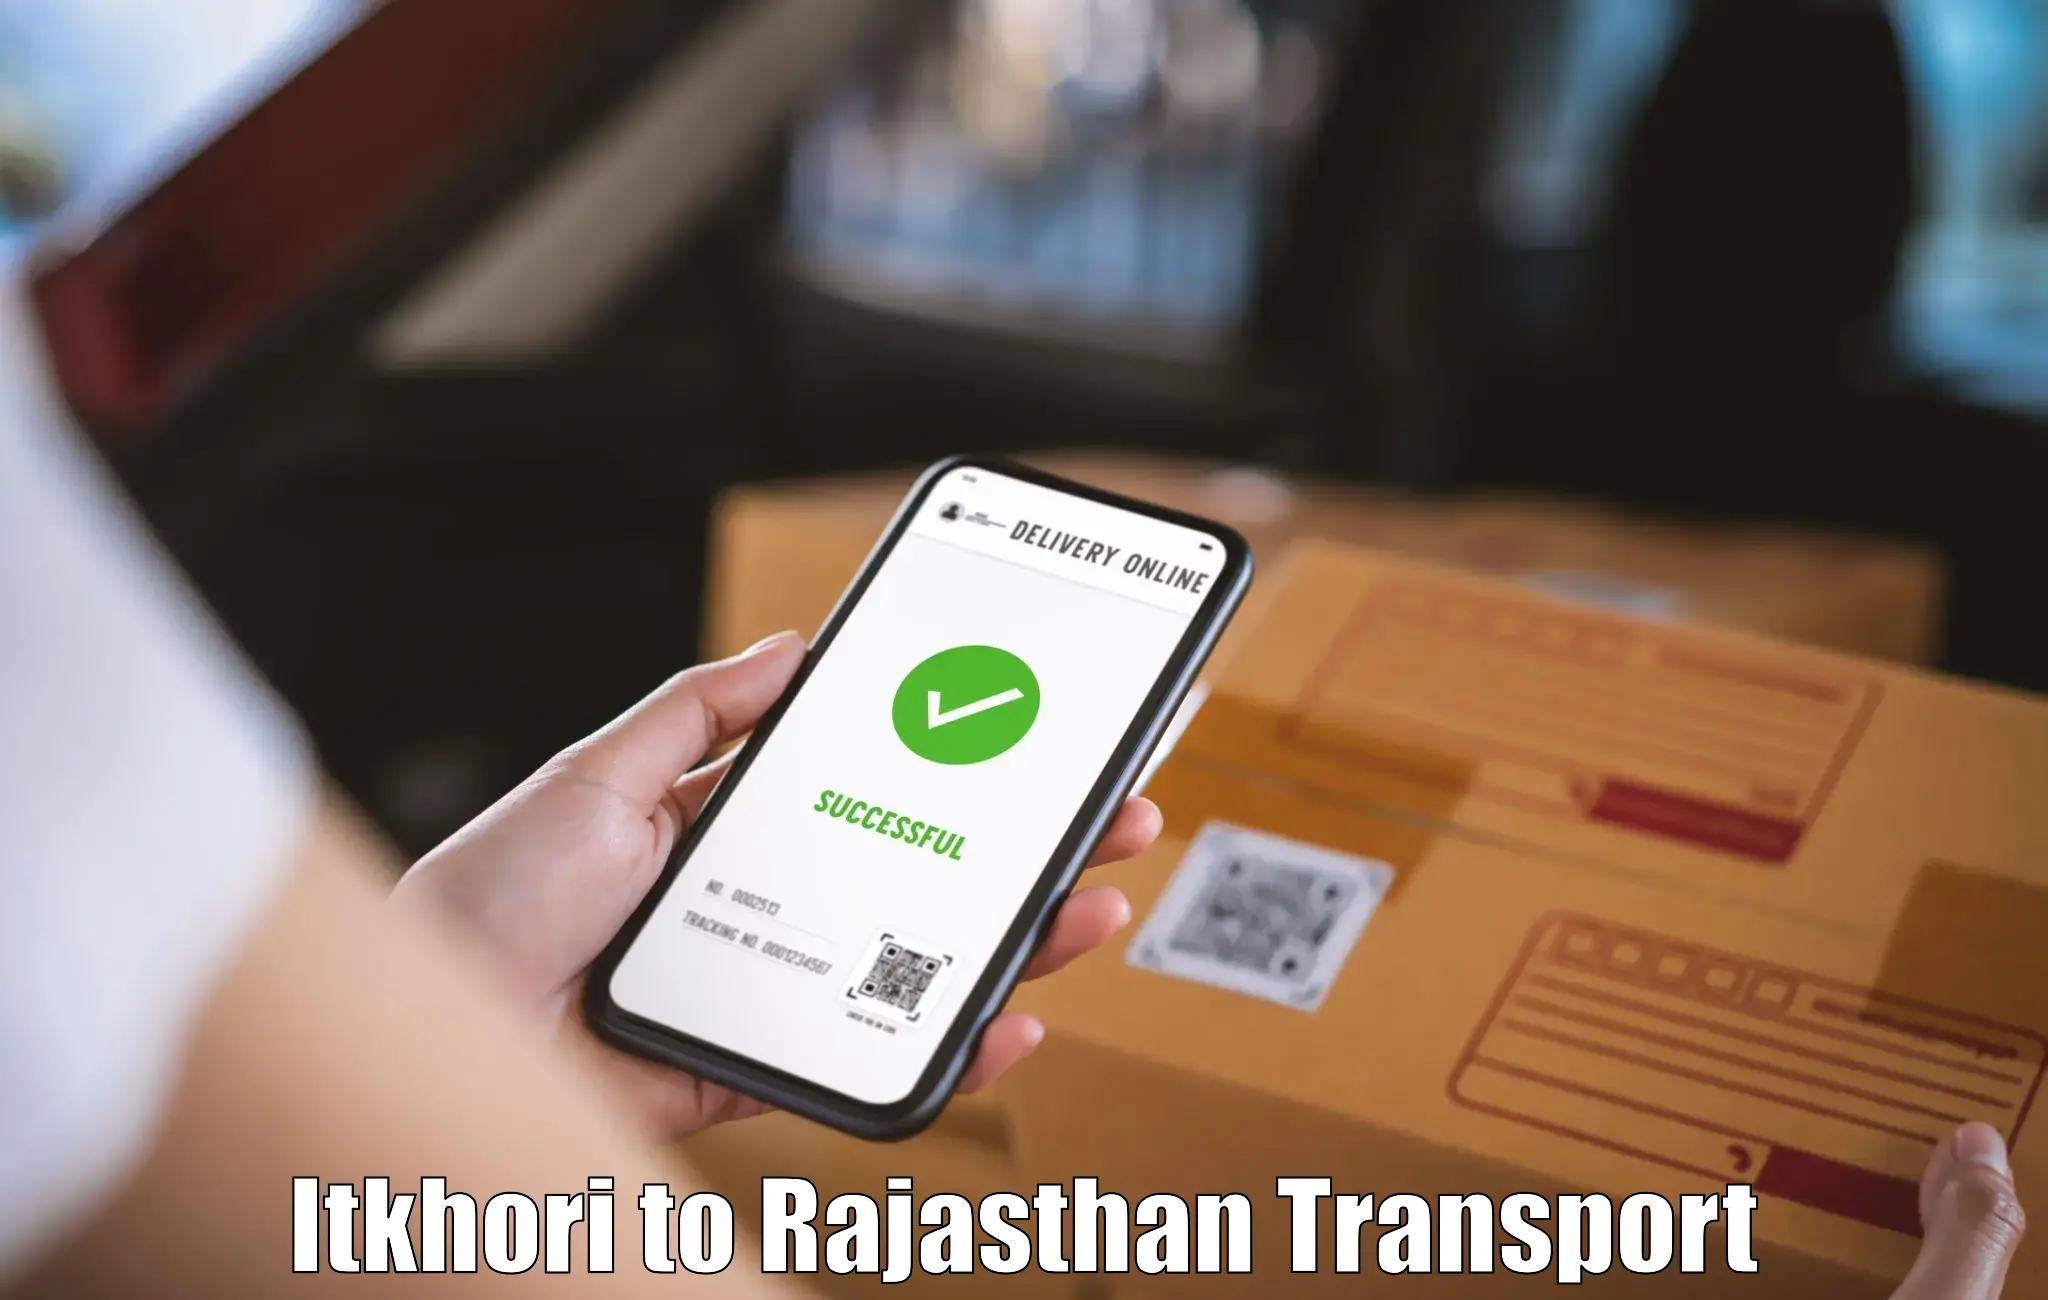 Transport in sharing Itkhori to Bhadsora